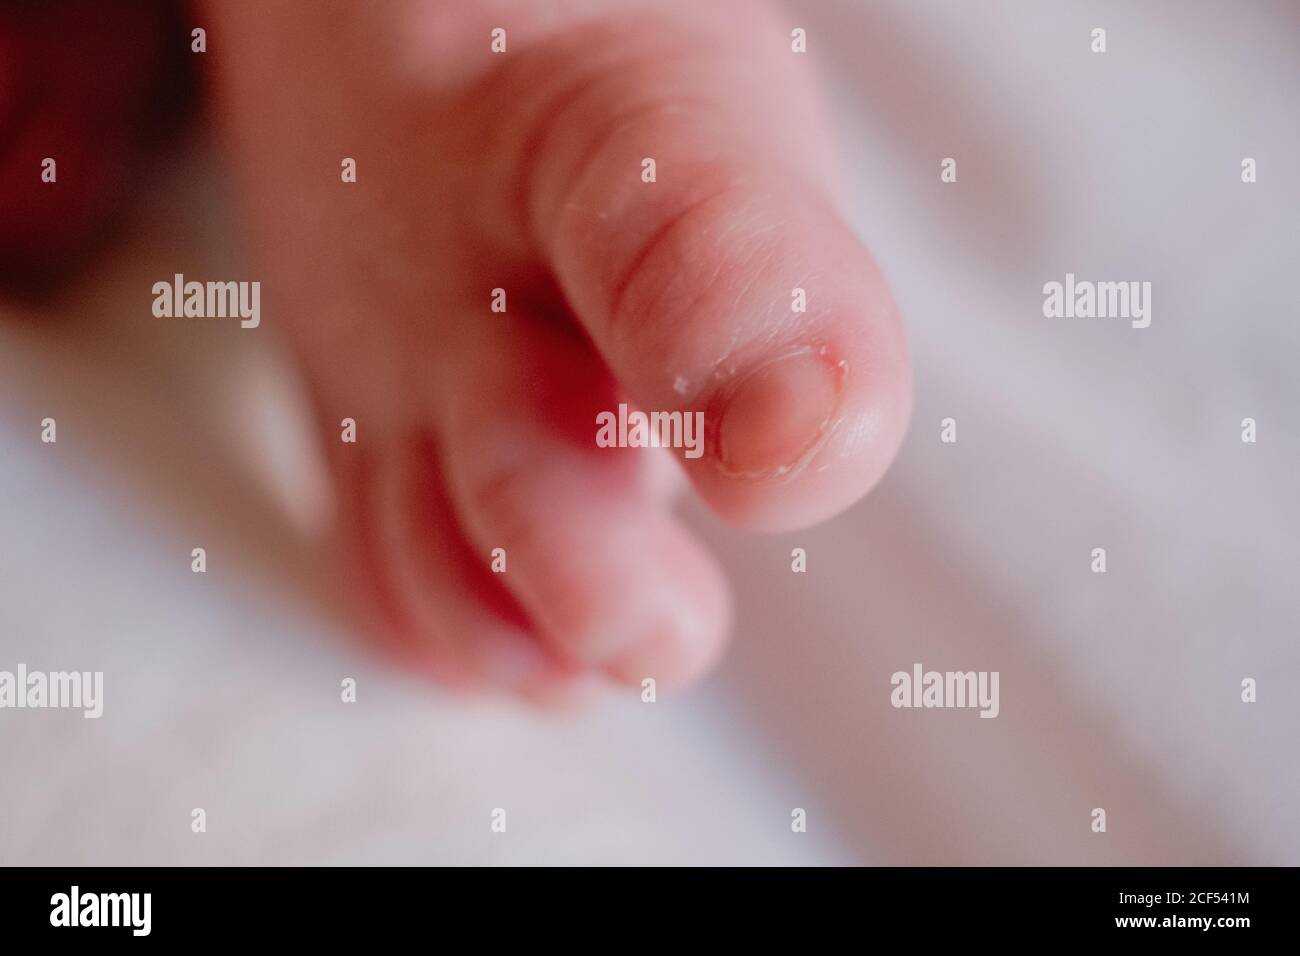 Hoher Winkel der Nahauffüße von unkenntlich ruhigen Säugling mit Rosa Haut und winzige Zehen gegen verschwommenes weißes Bettlaken Zu Hause Stockfoto